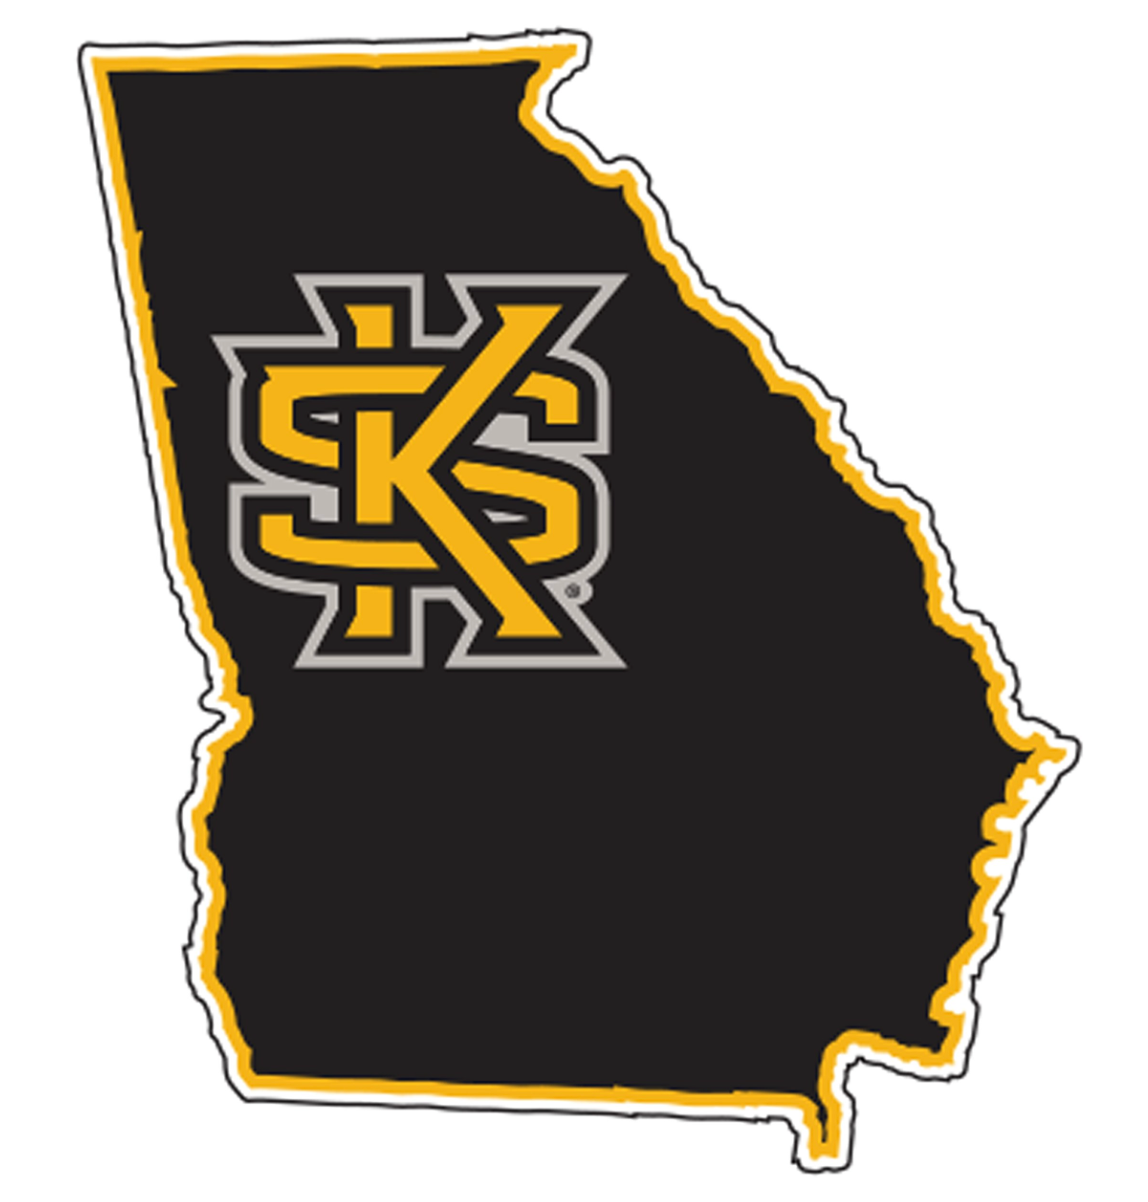 Kennesaw State University Logo (KSU) - PNG Logo Vector Downloads (SVG, EPS)